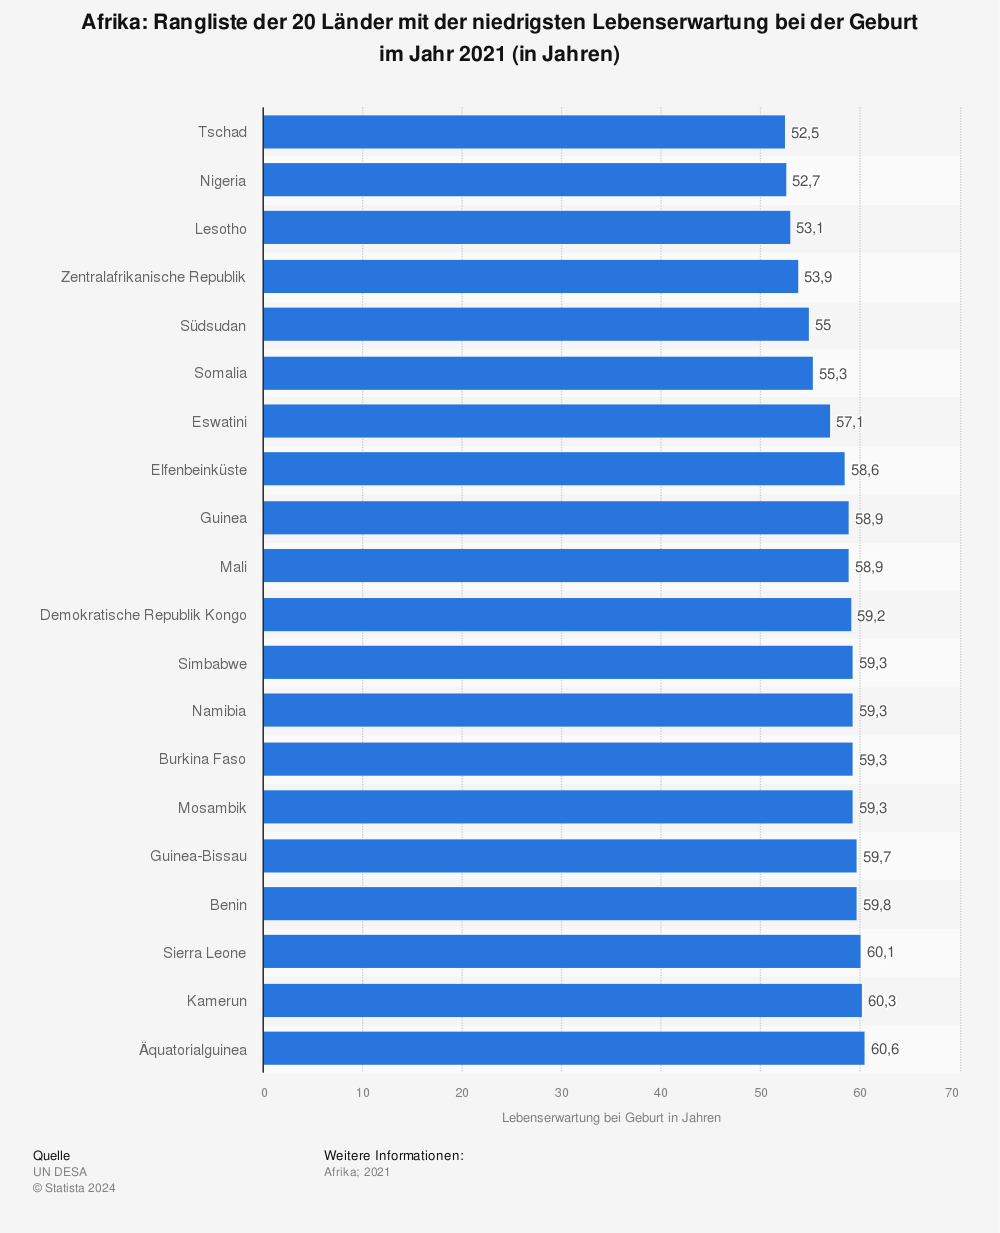 Statistik: Afrika: Rangliste der 20 Länder mit der niedrigsten Lebenserwartung bei der Geburt im Jahr 2021 (in Jahren) | Statista